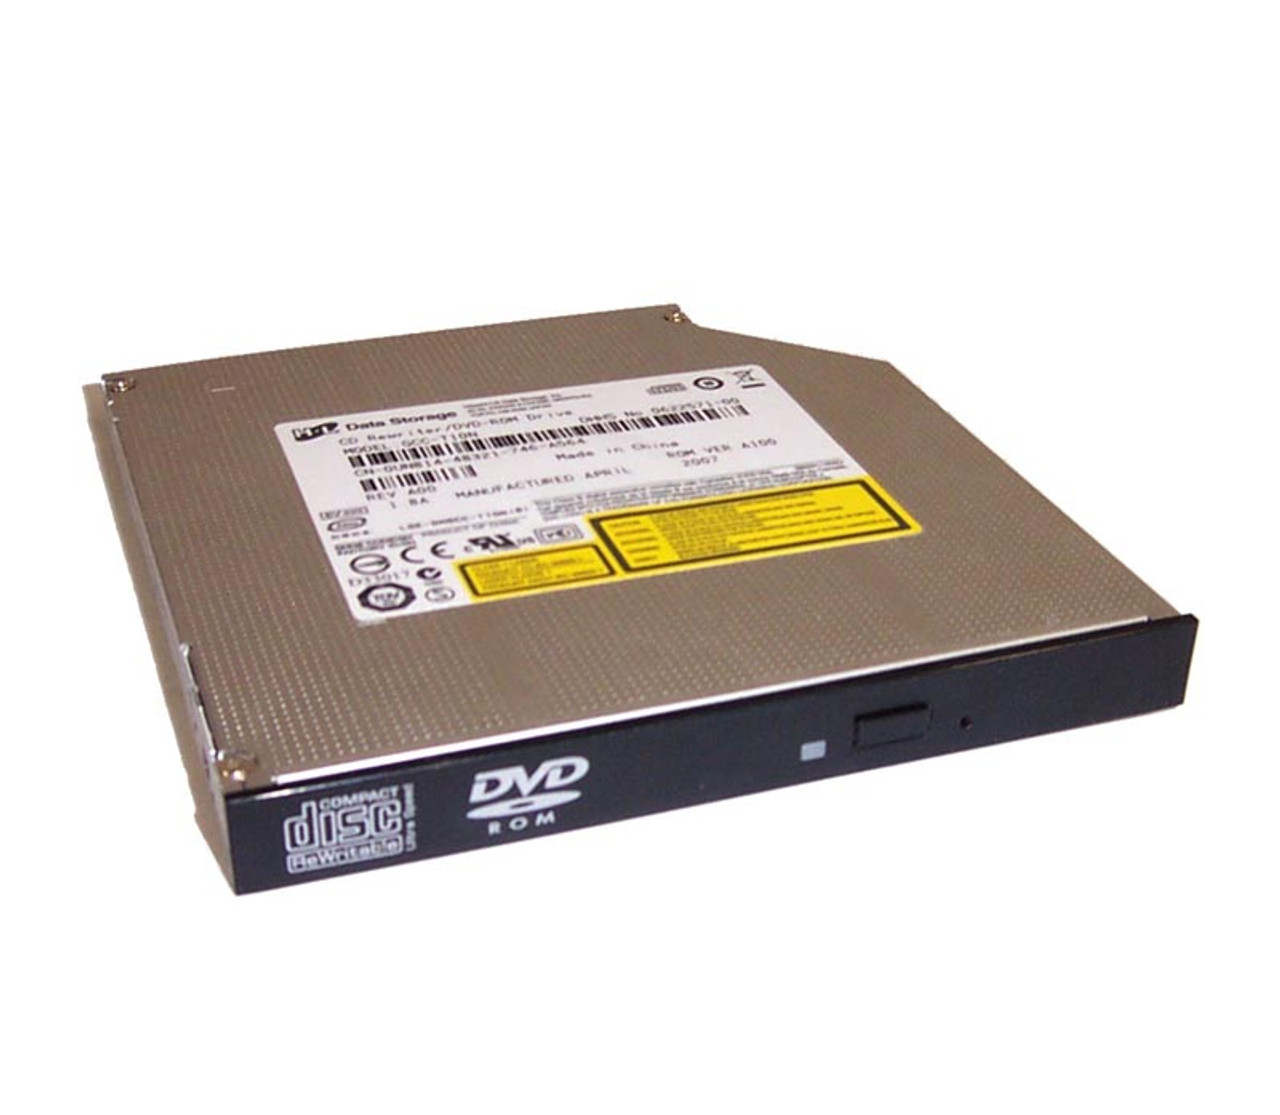 0NFNTY - Dell DVD-ROM Drive for Latitude E6520